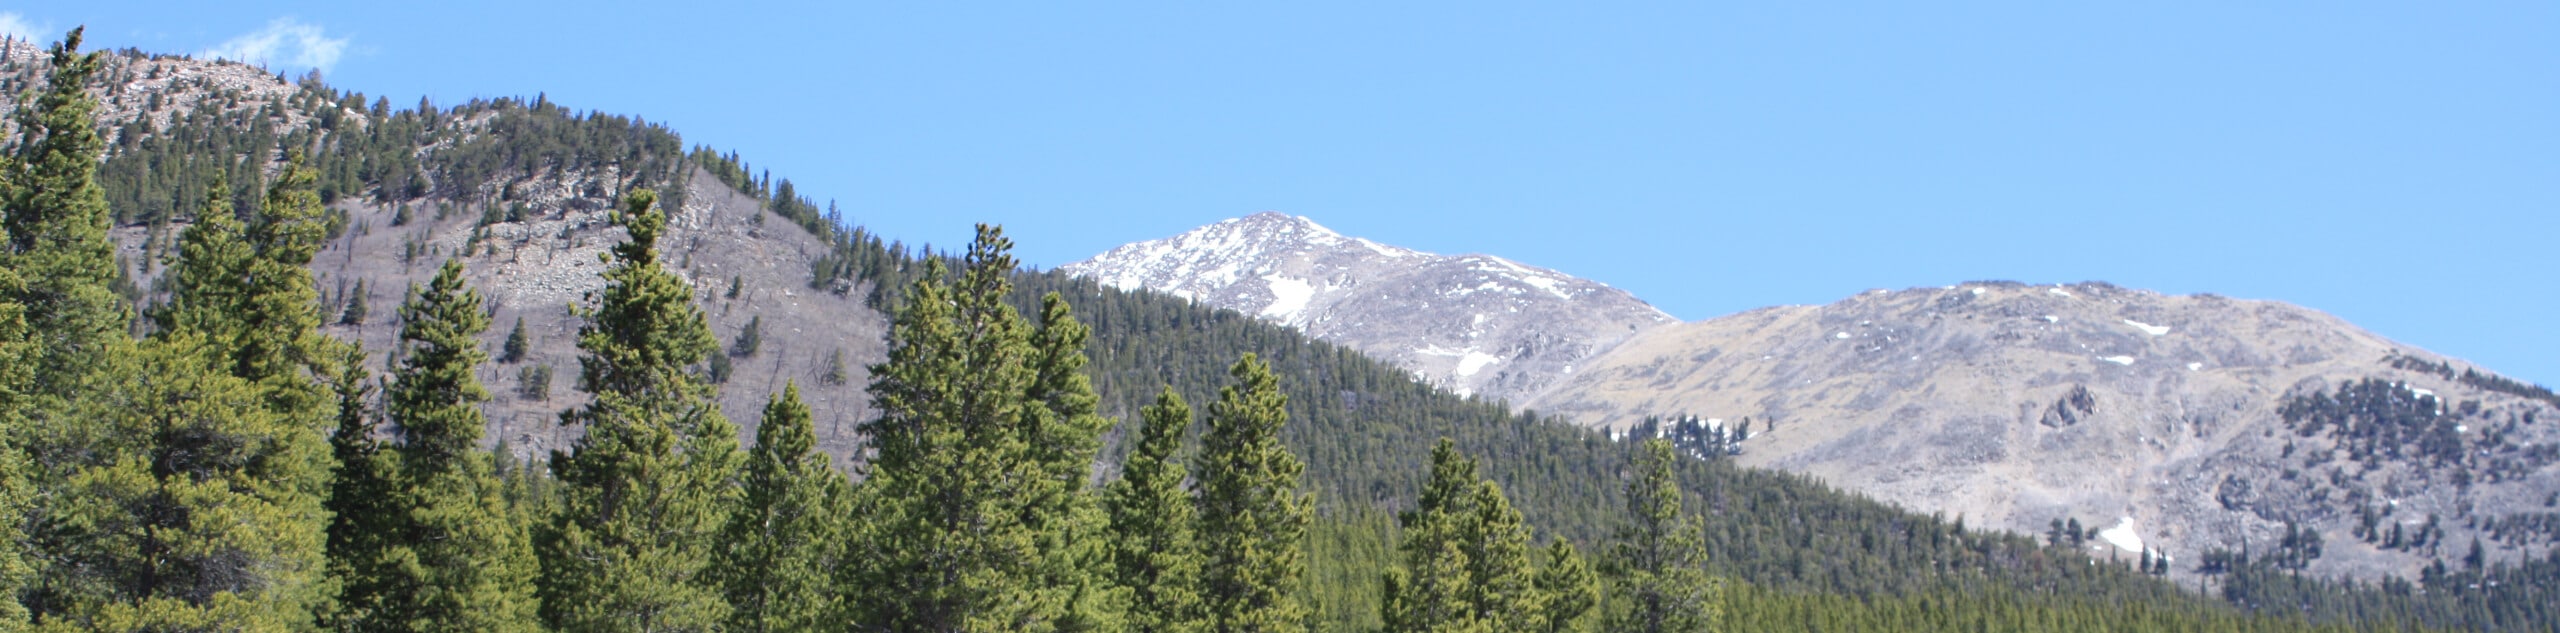 Colorado Trail Segment 13 via South Cottonwood Trailhead